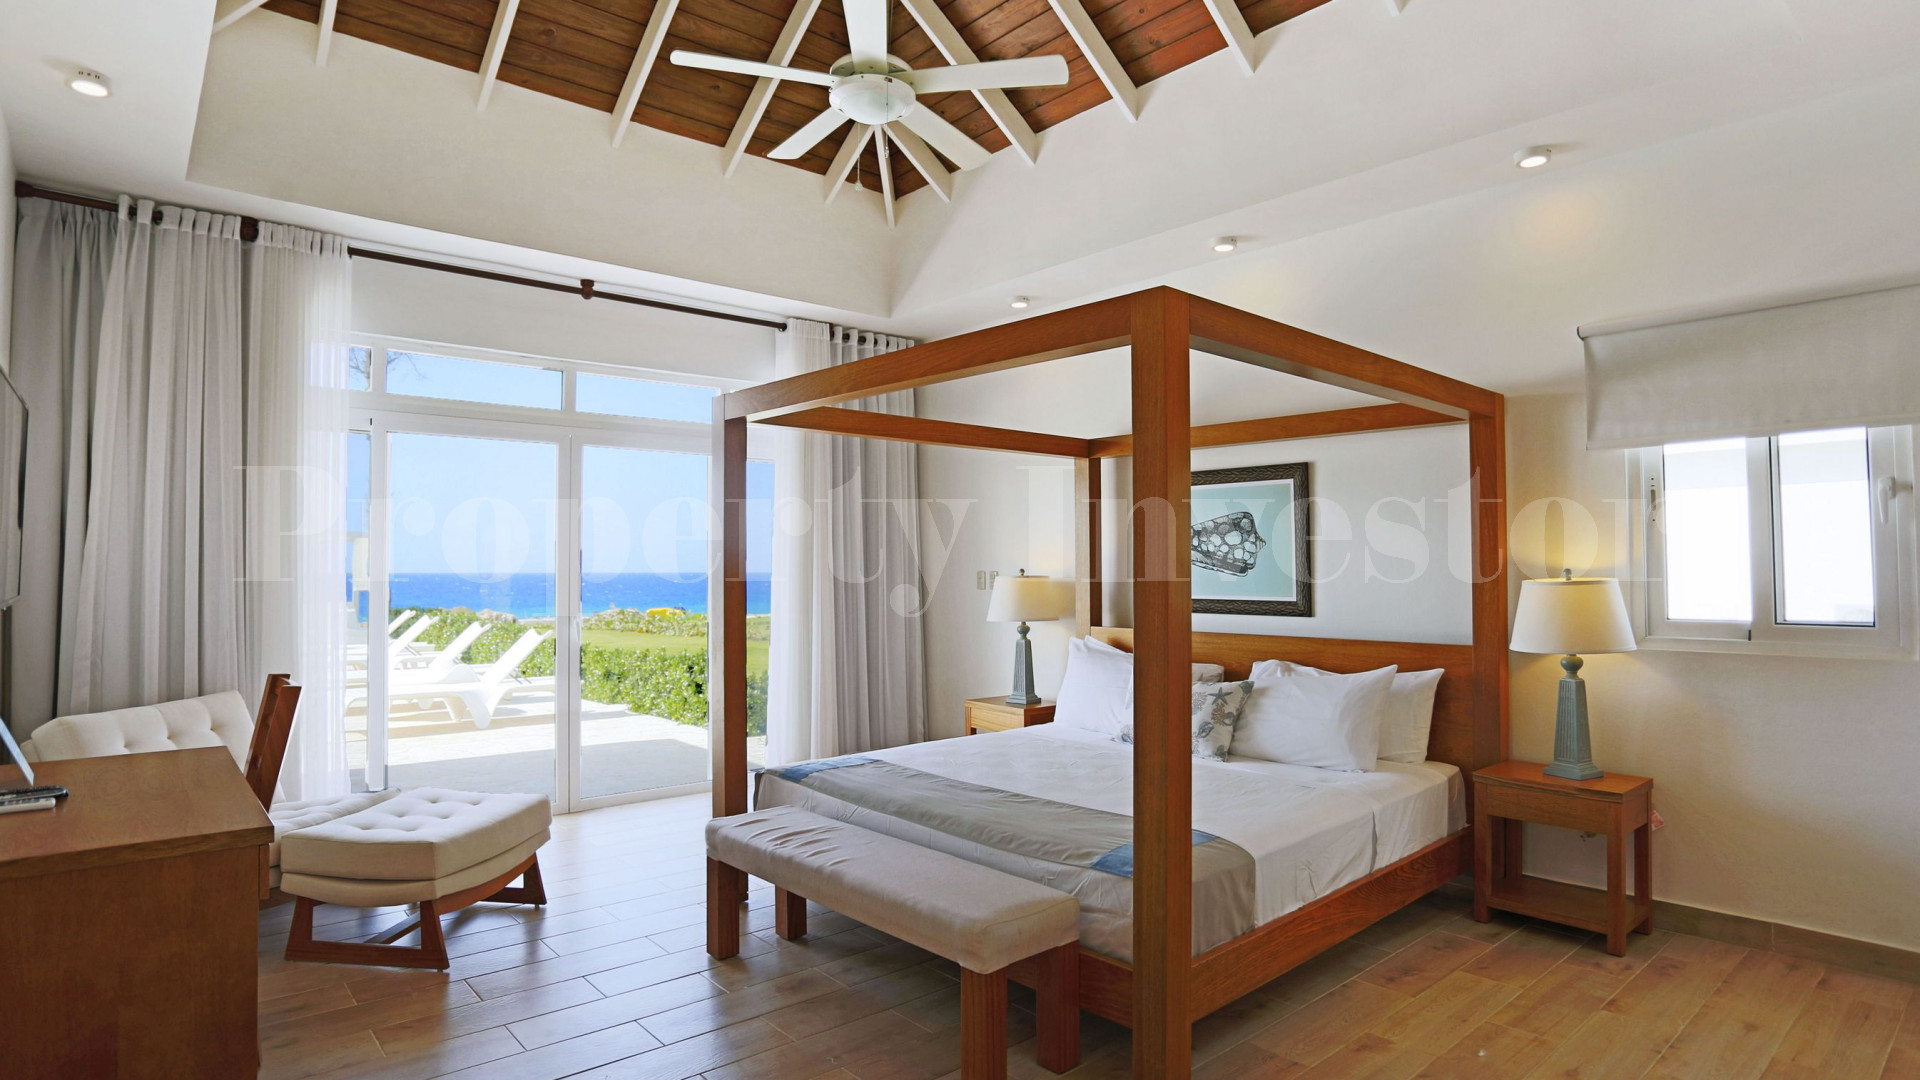 Вилла с 4 спальнями на берегу моря в Доминиканской Республике с финансирование на 30 лет (Вилла 3)